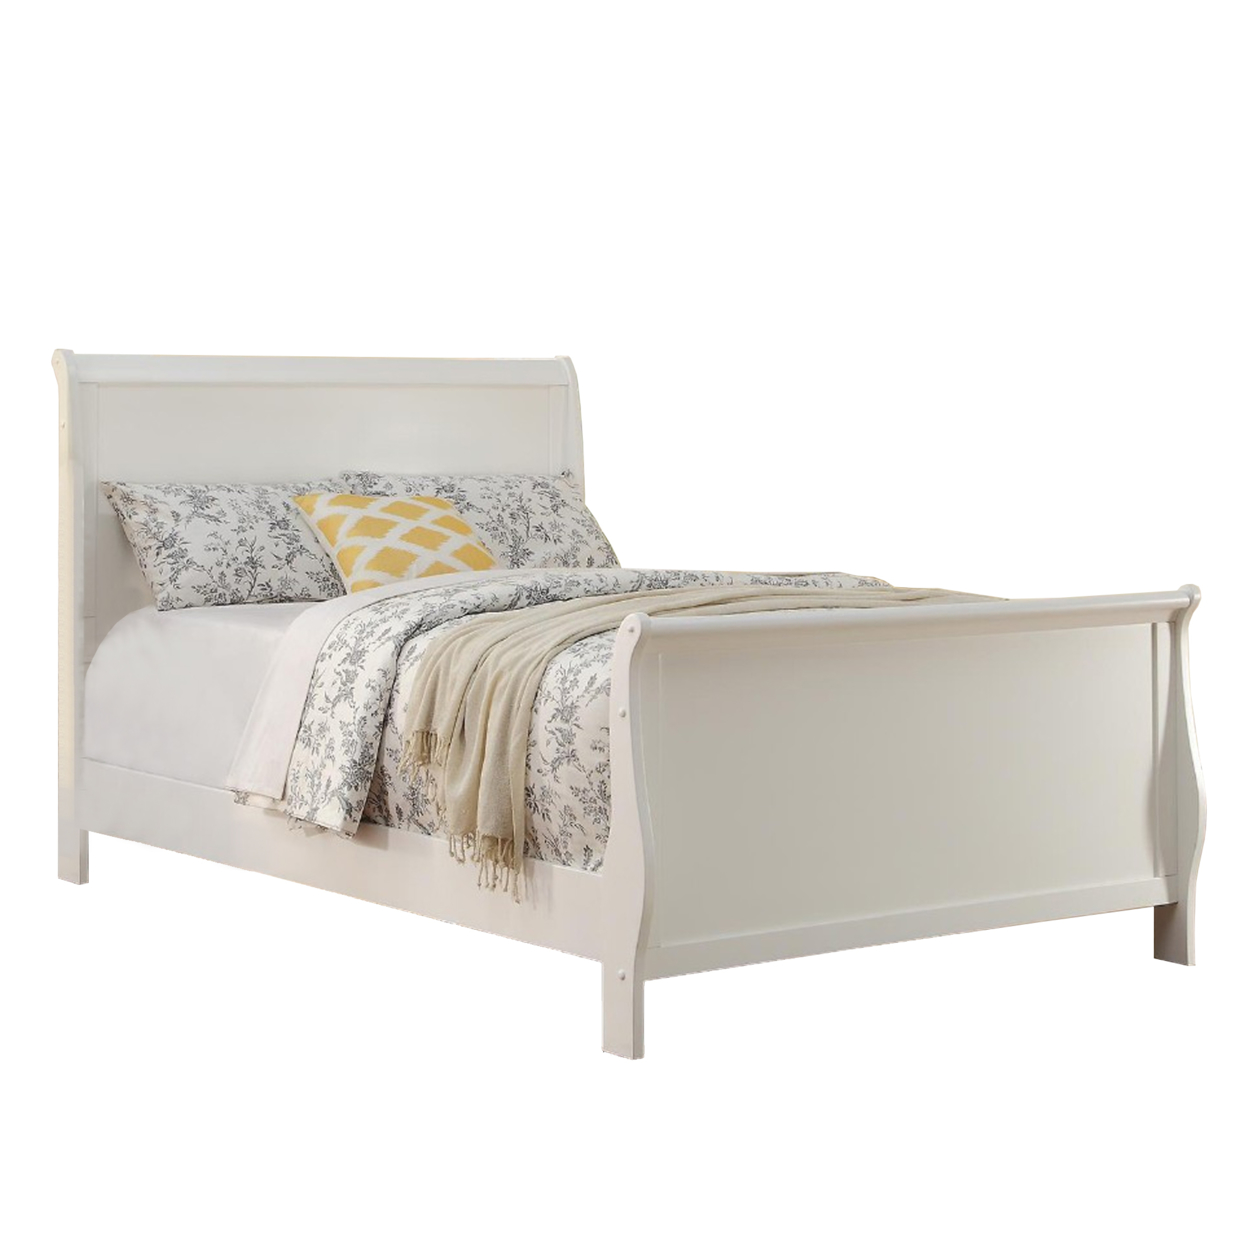 Spellbinding Clean Wooden Full Bed, White- Saltoro Sherpi